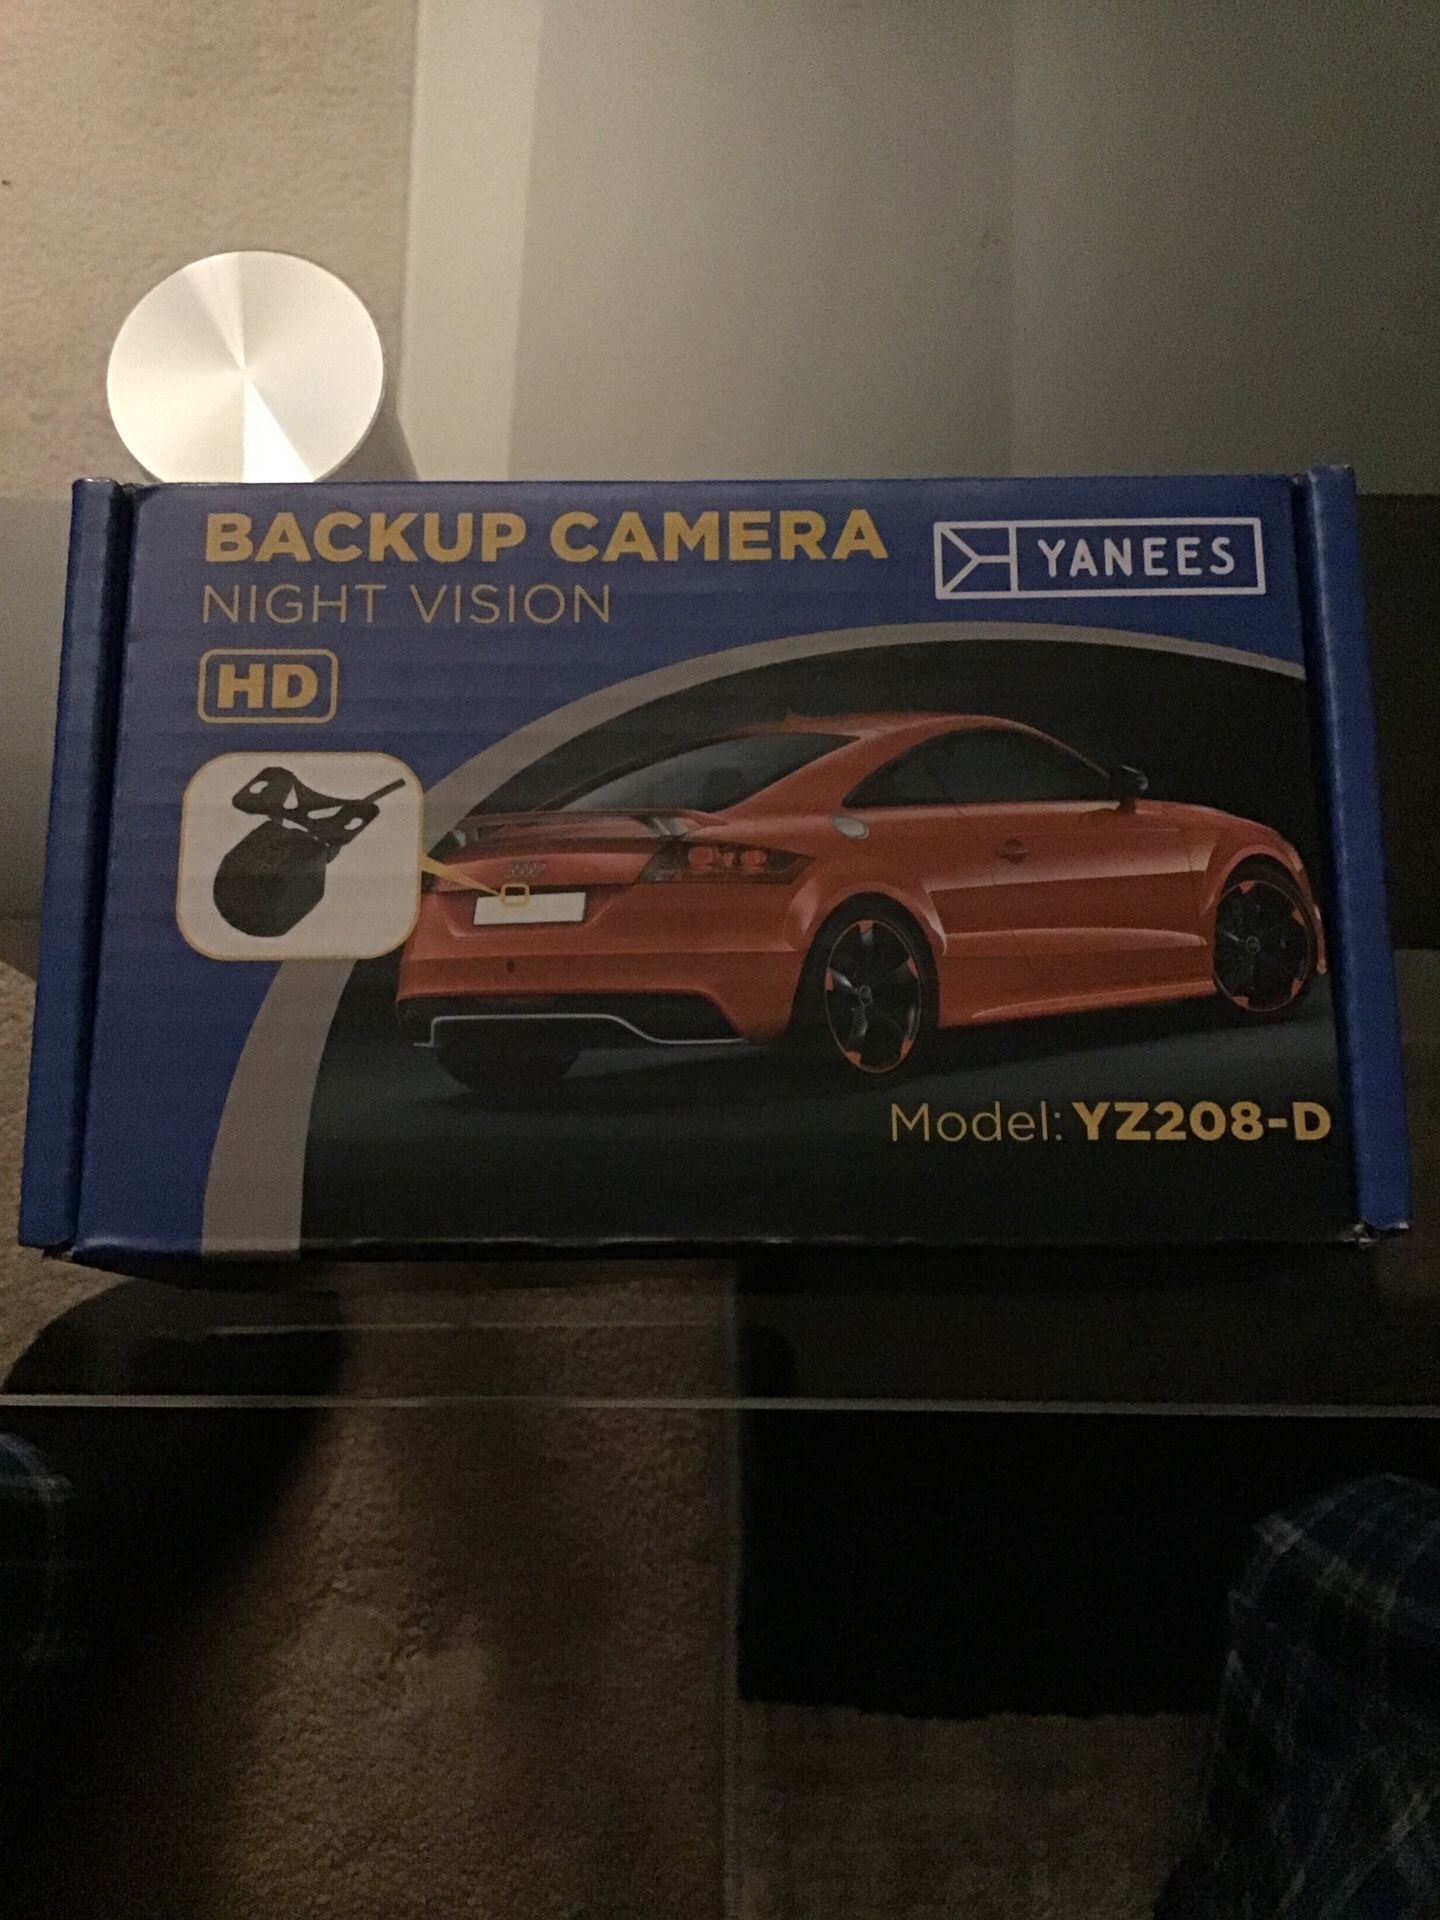 Backup camera (night vision HD)